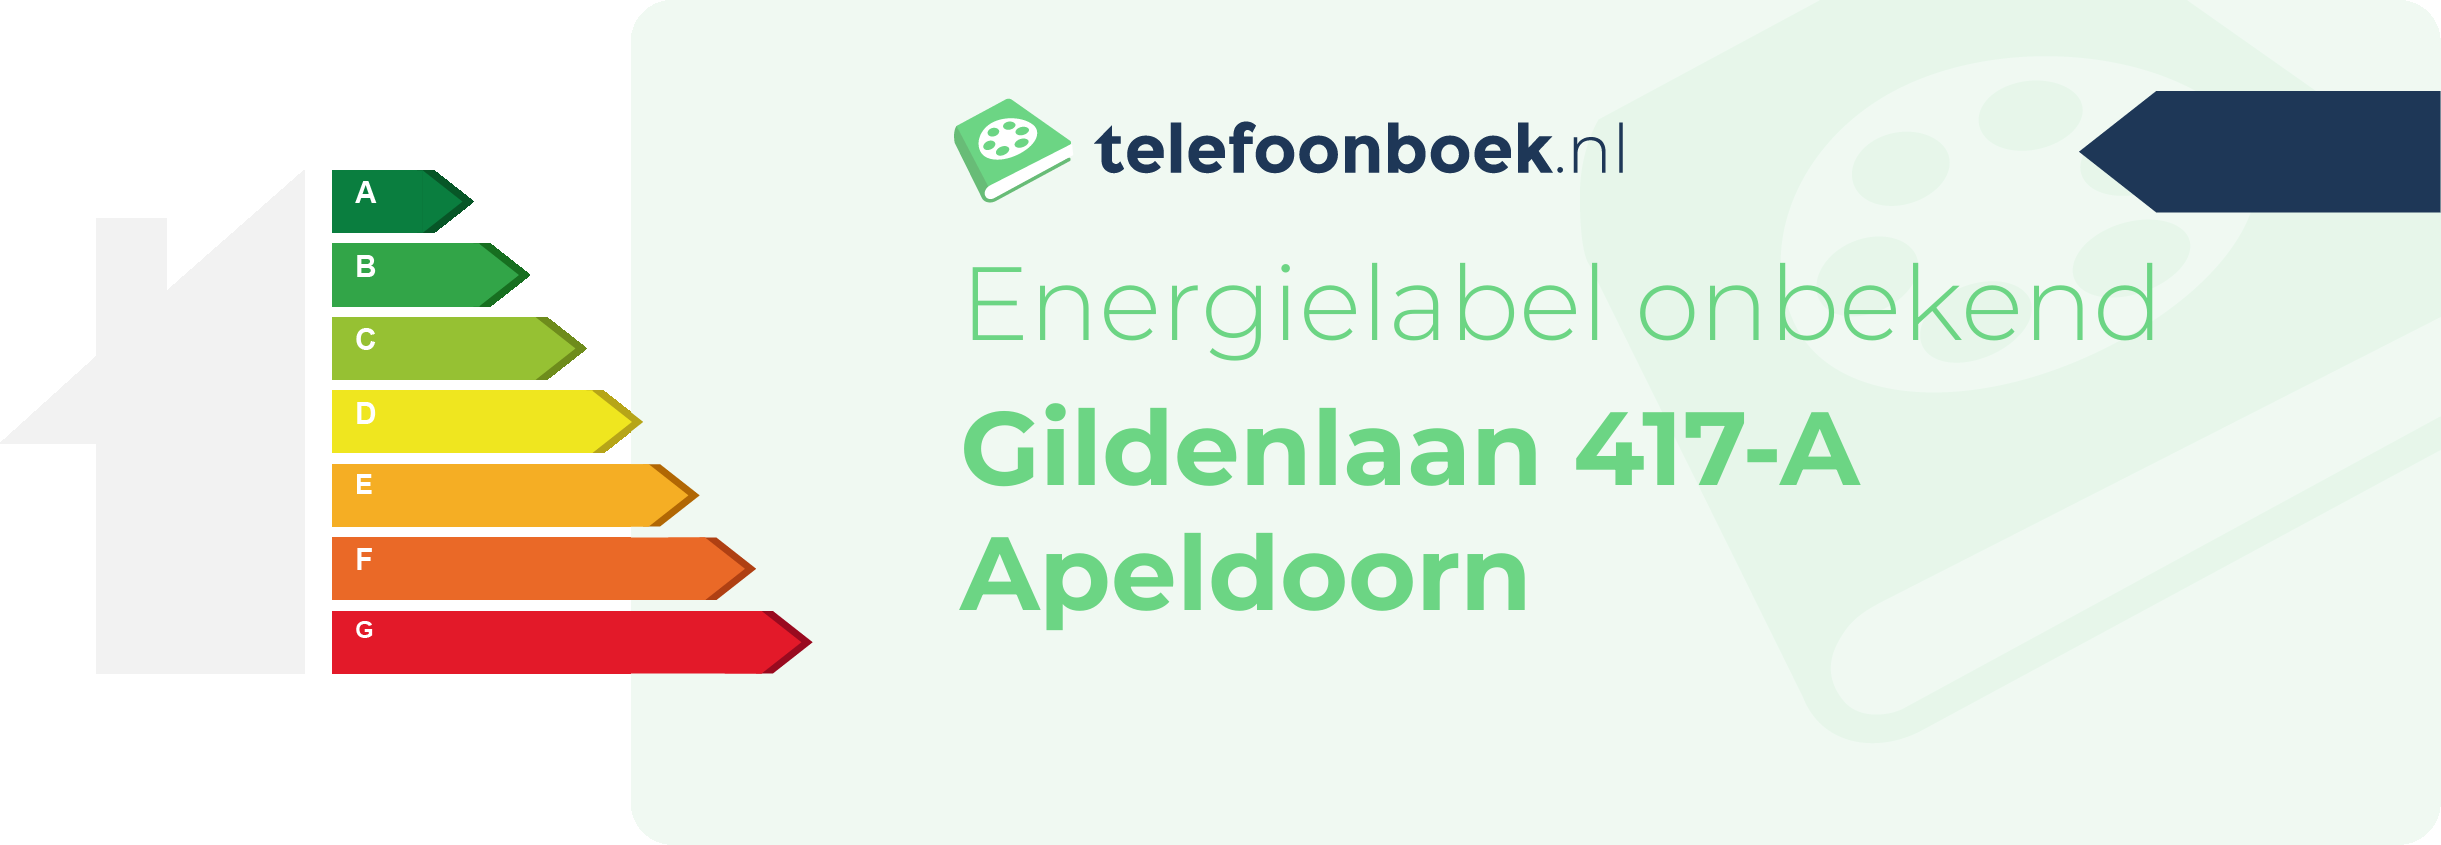 Energielabel Gildenlaan 417-A Apeldoorn